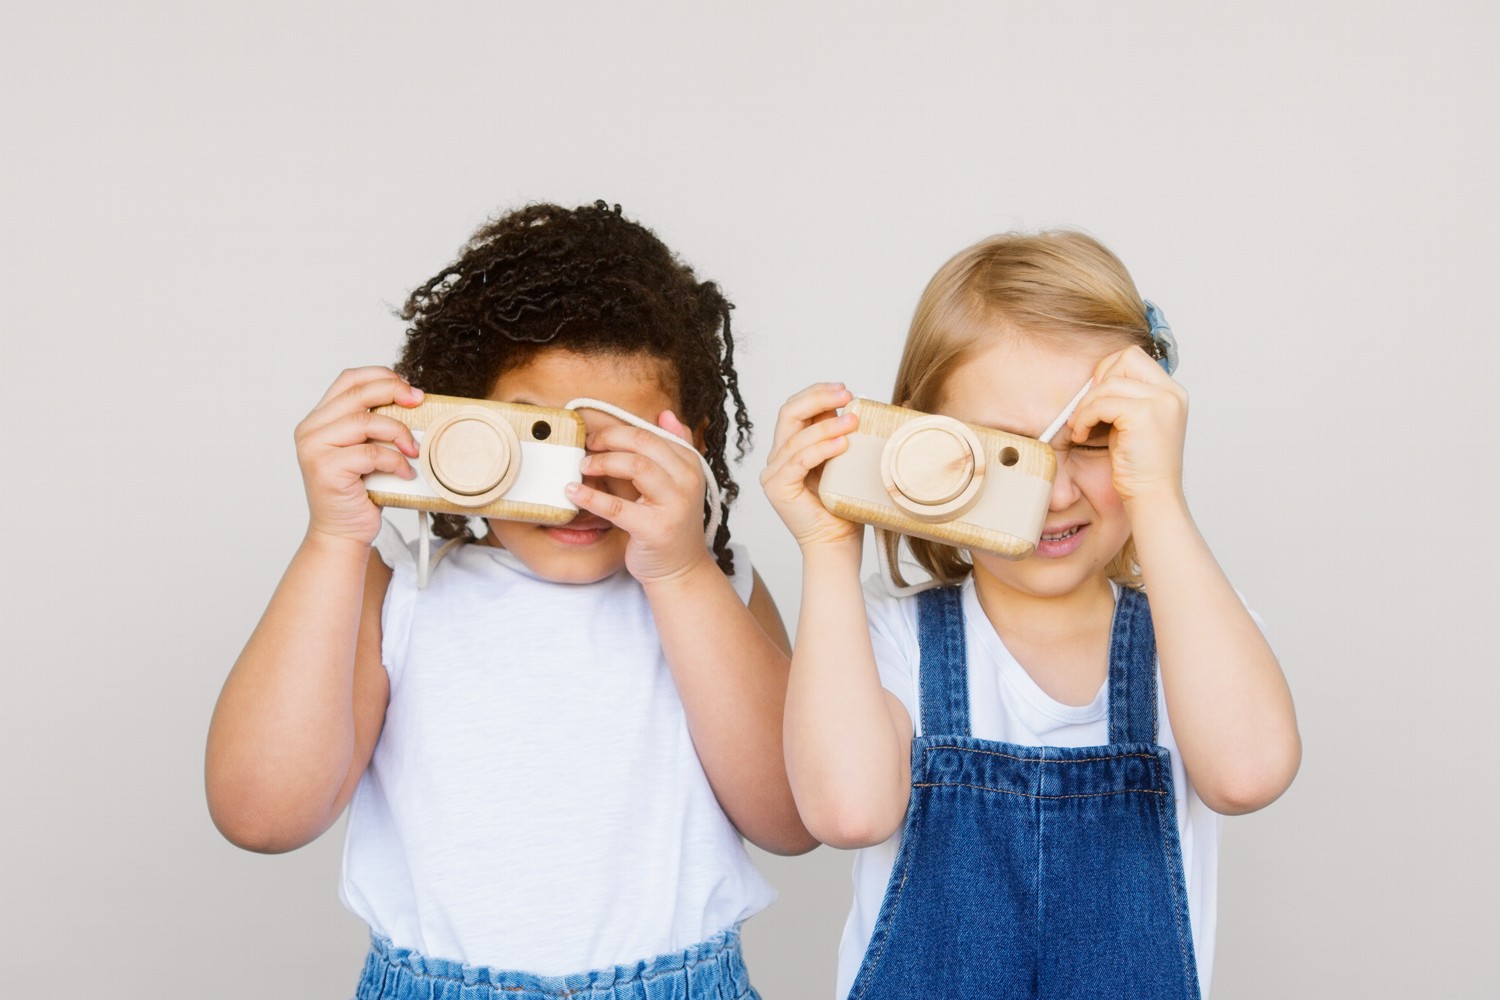 Bild zeigt: Zwei kleine Mädchen halten sich einen Fotoapparat aus Holz vor das Gesicht